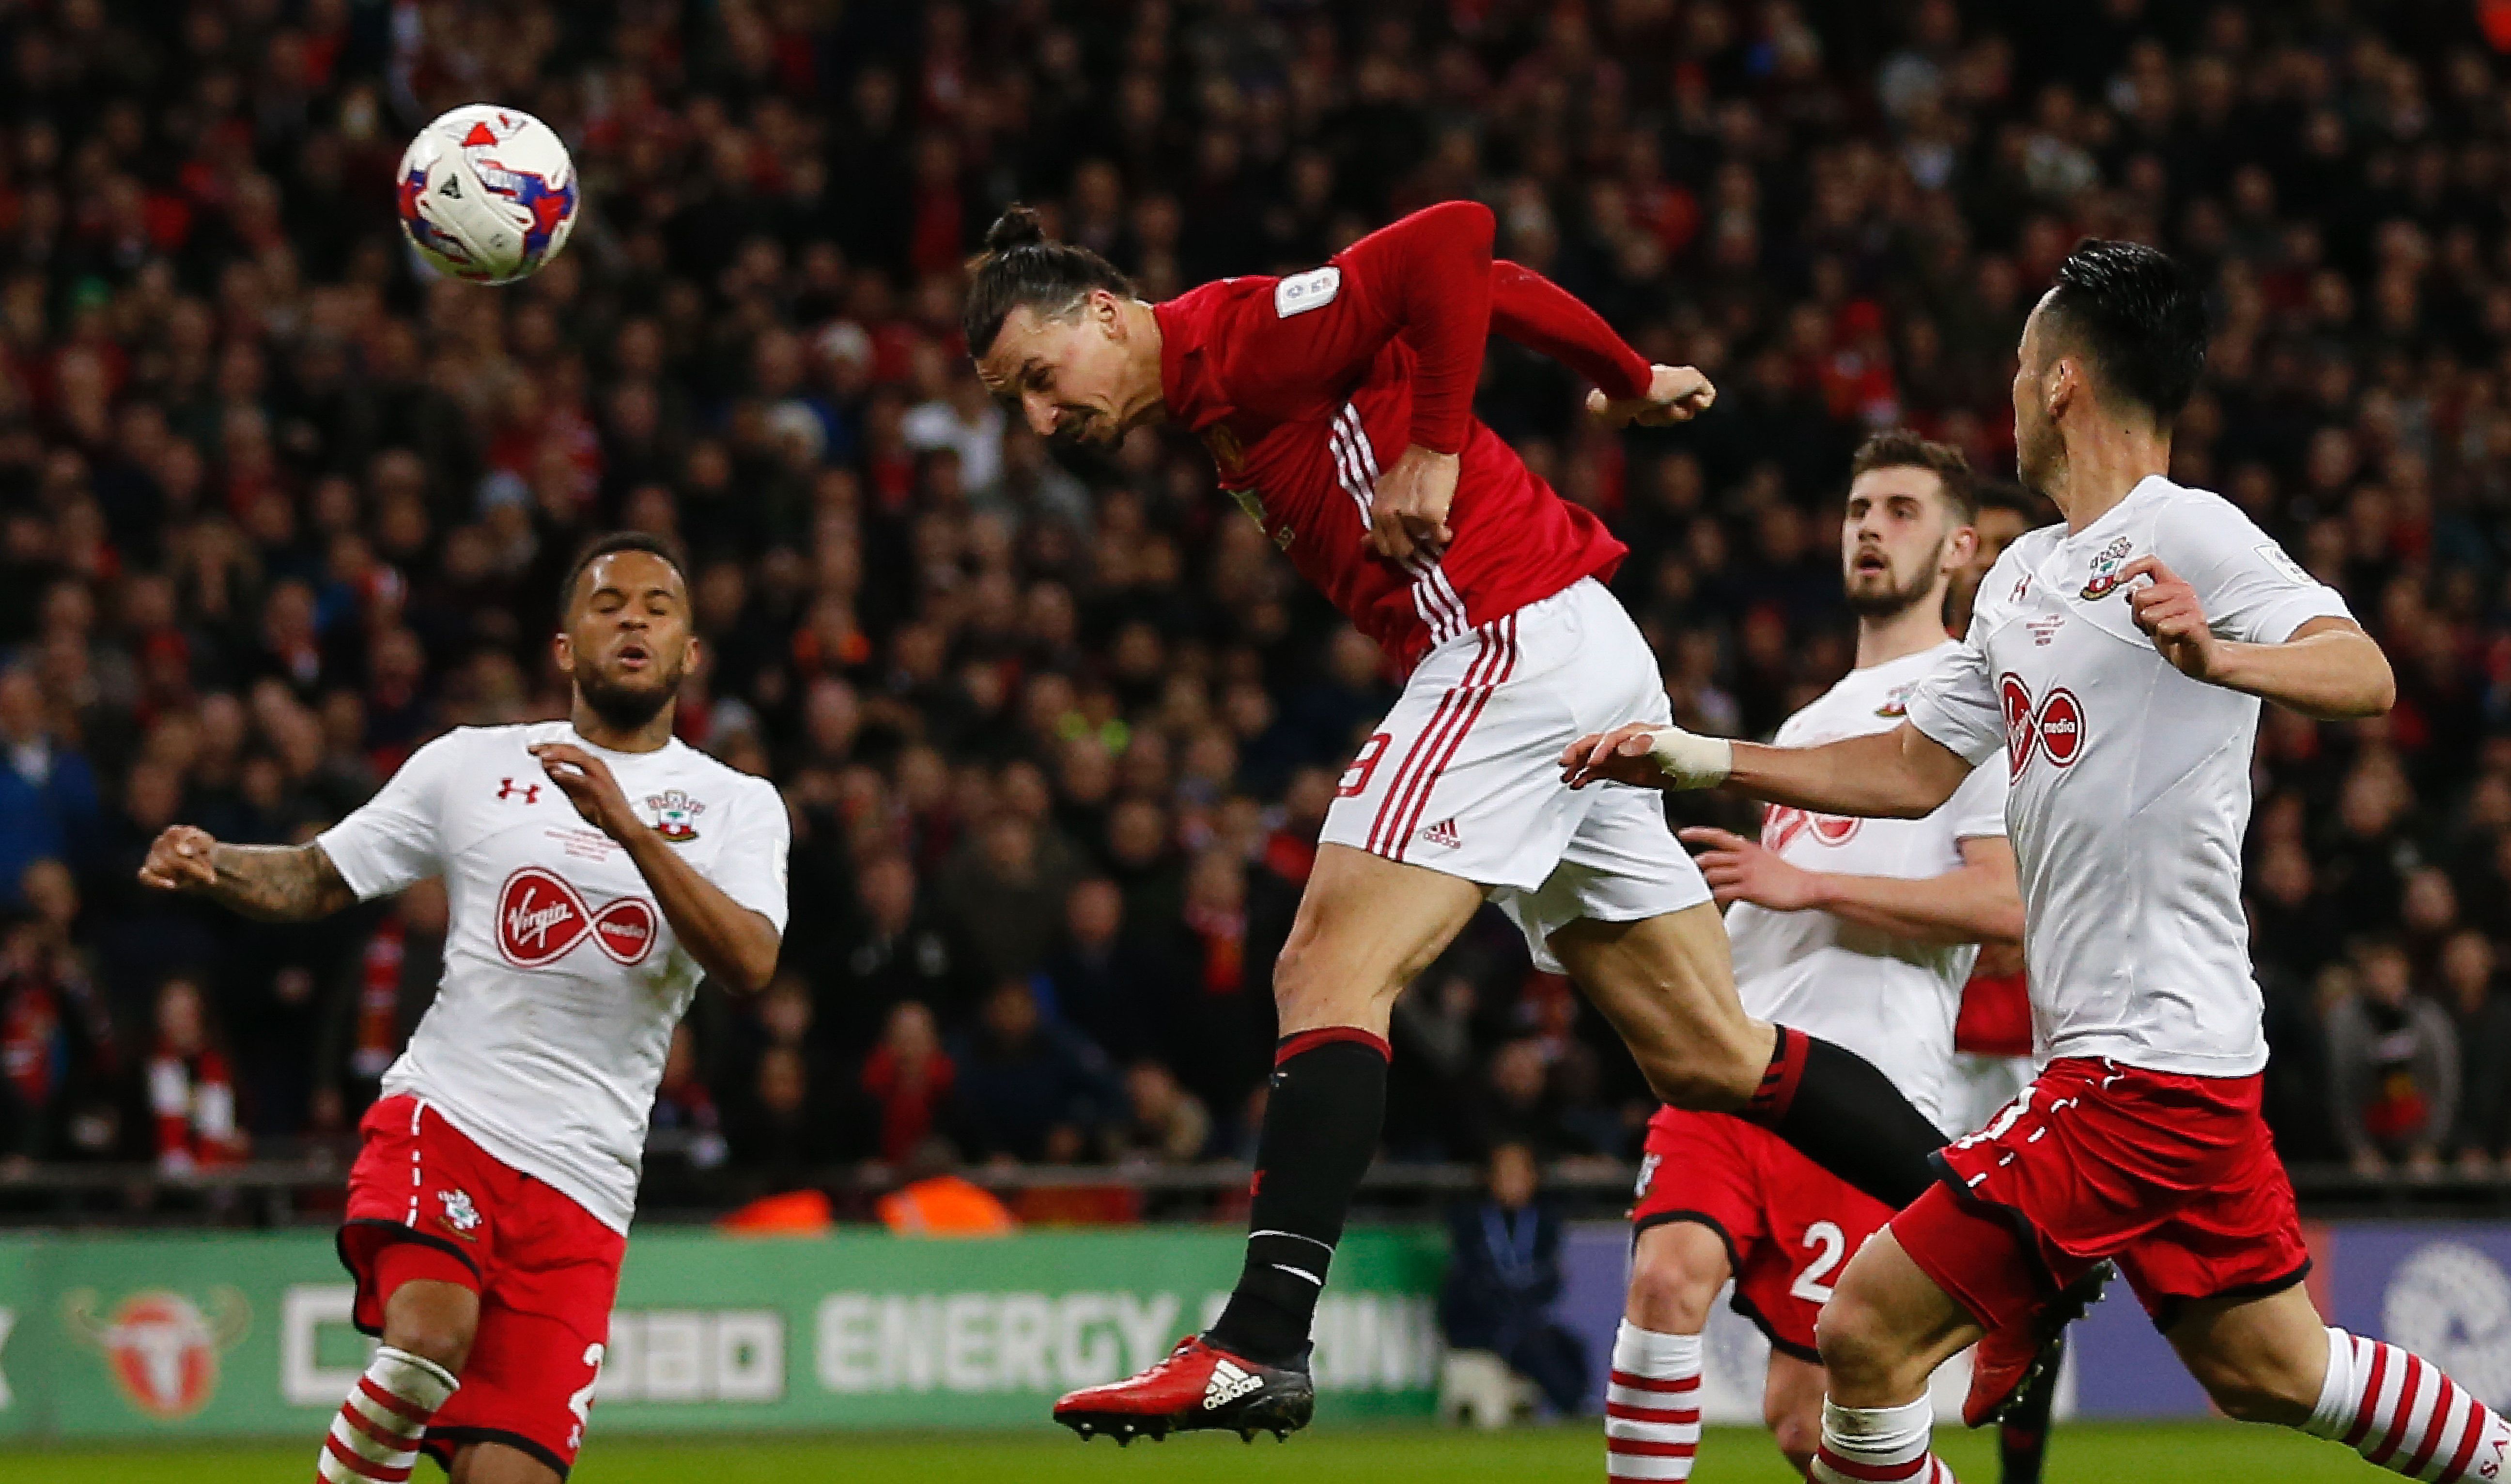 Ibrahimovic cabecea el balón para anotar el tercer gol del United contra el Southampton en la final de la Copa de la Liga. (Crédito: IAN KINGTON/AFP/Getty Images)